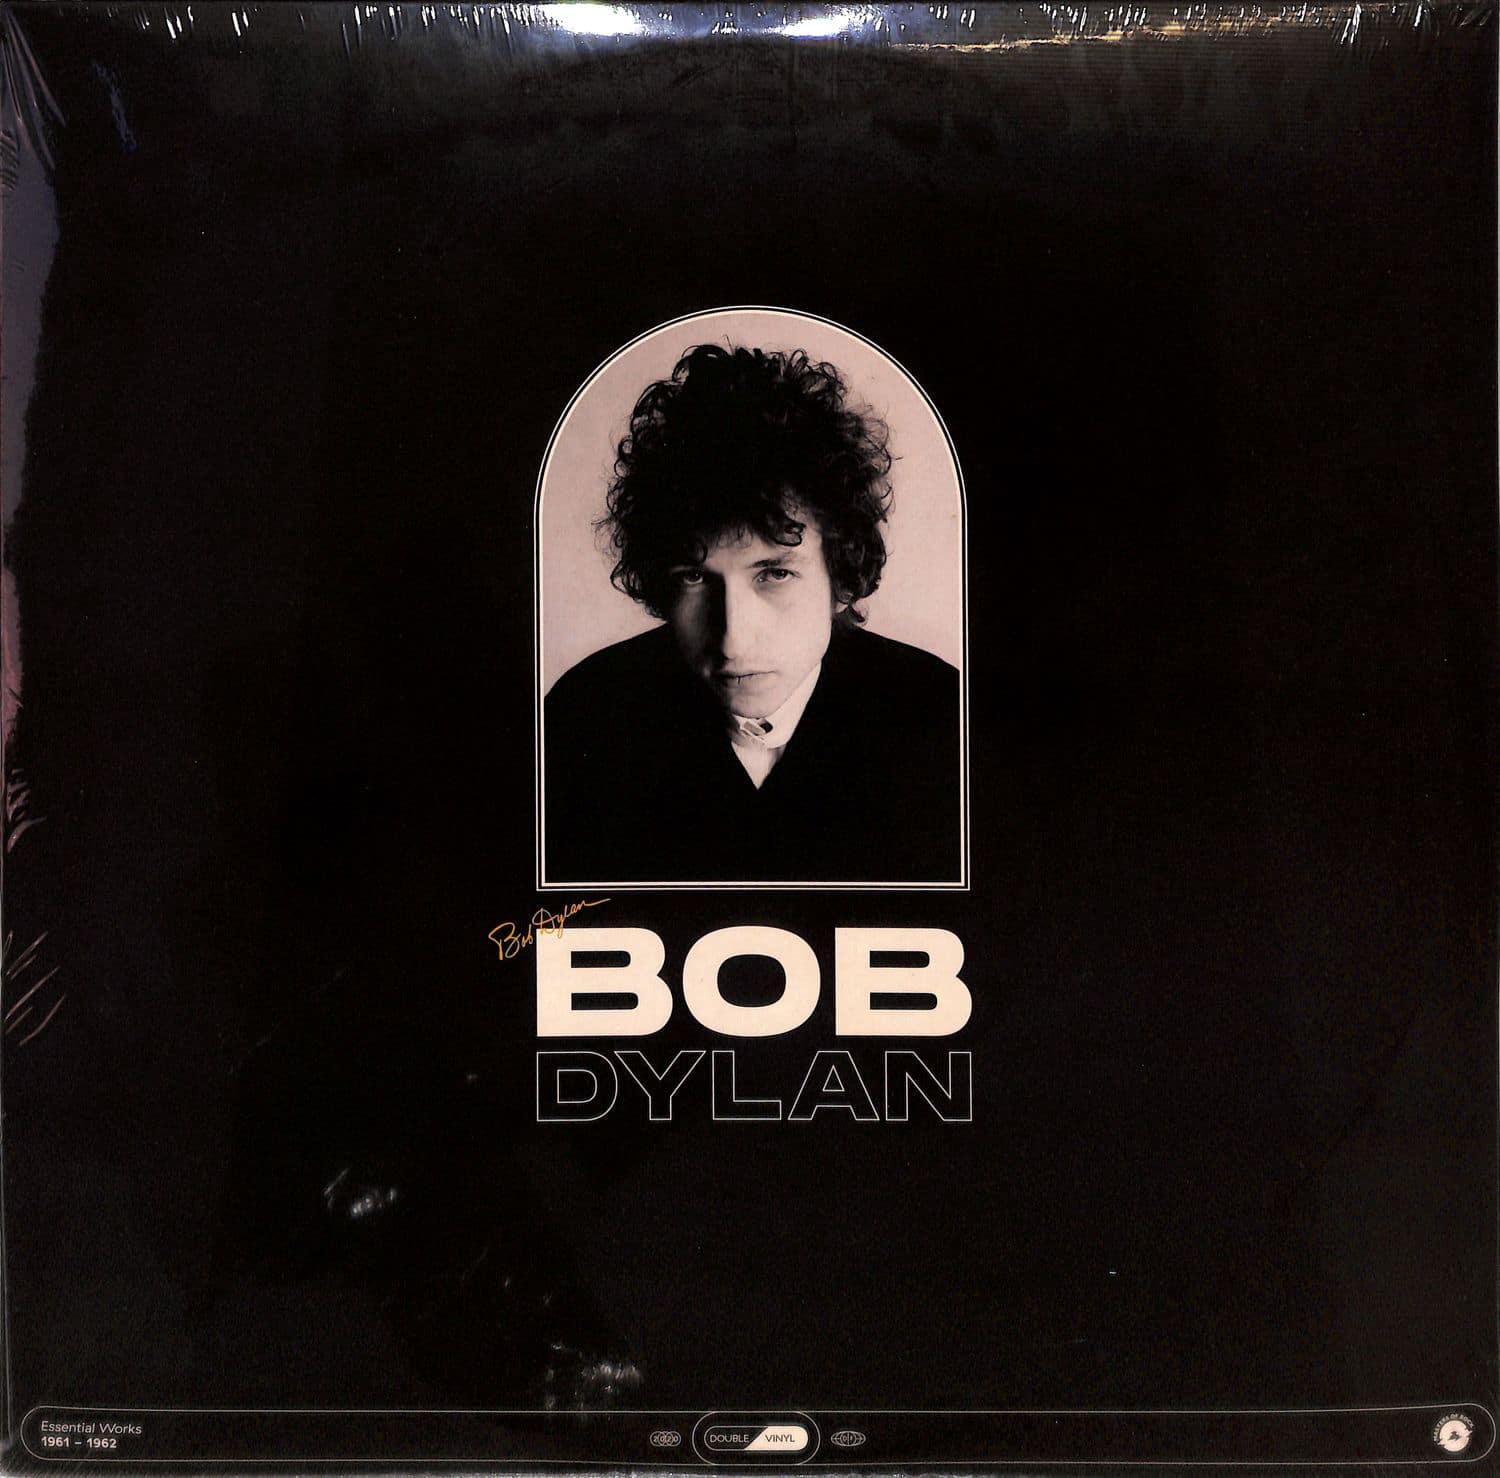 Bob Dylan - ESSENTIAL WORKS: 1961-1962 